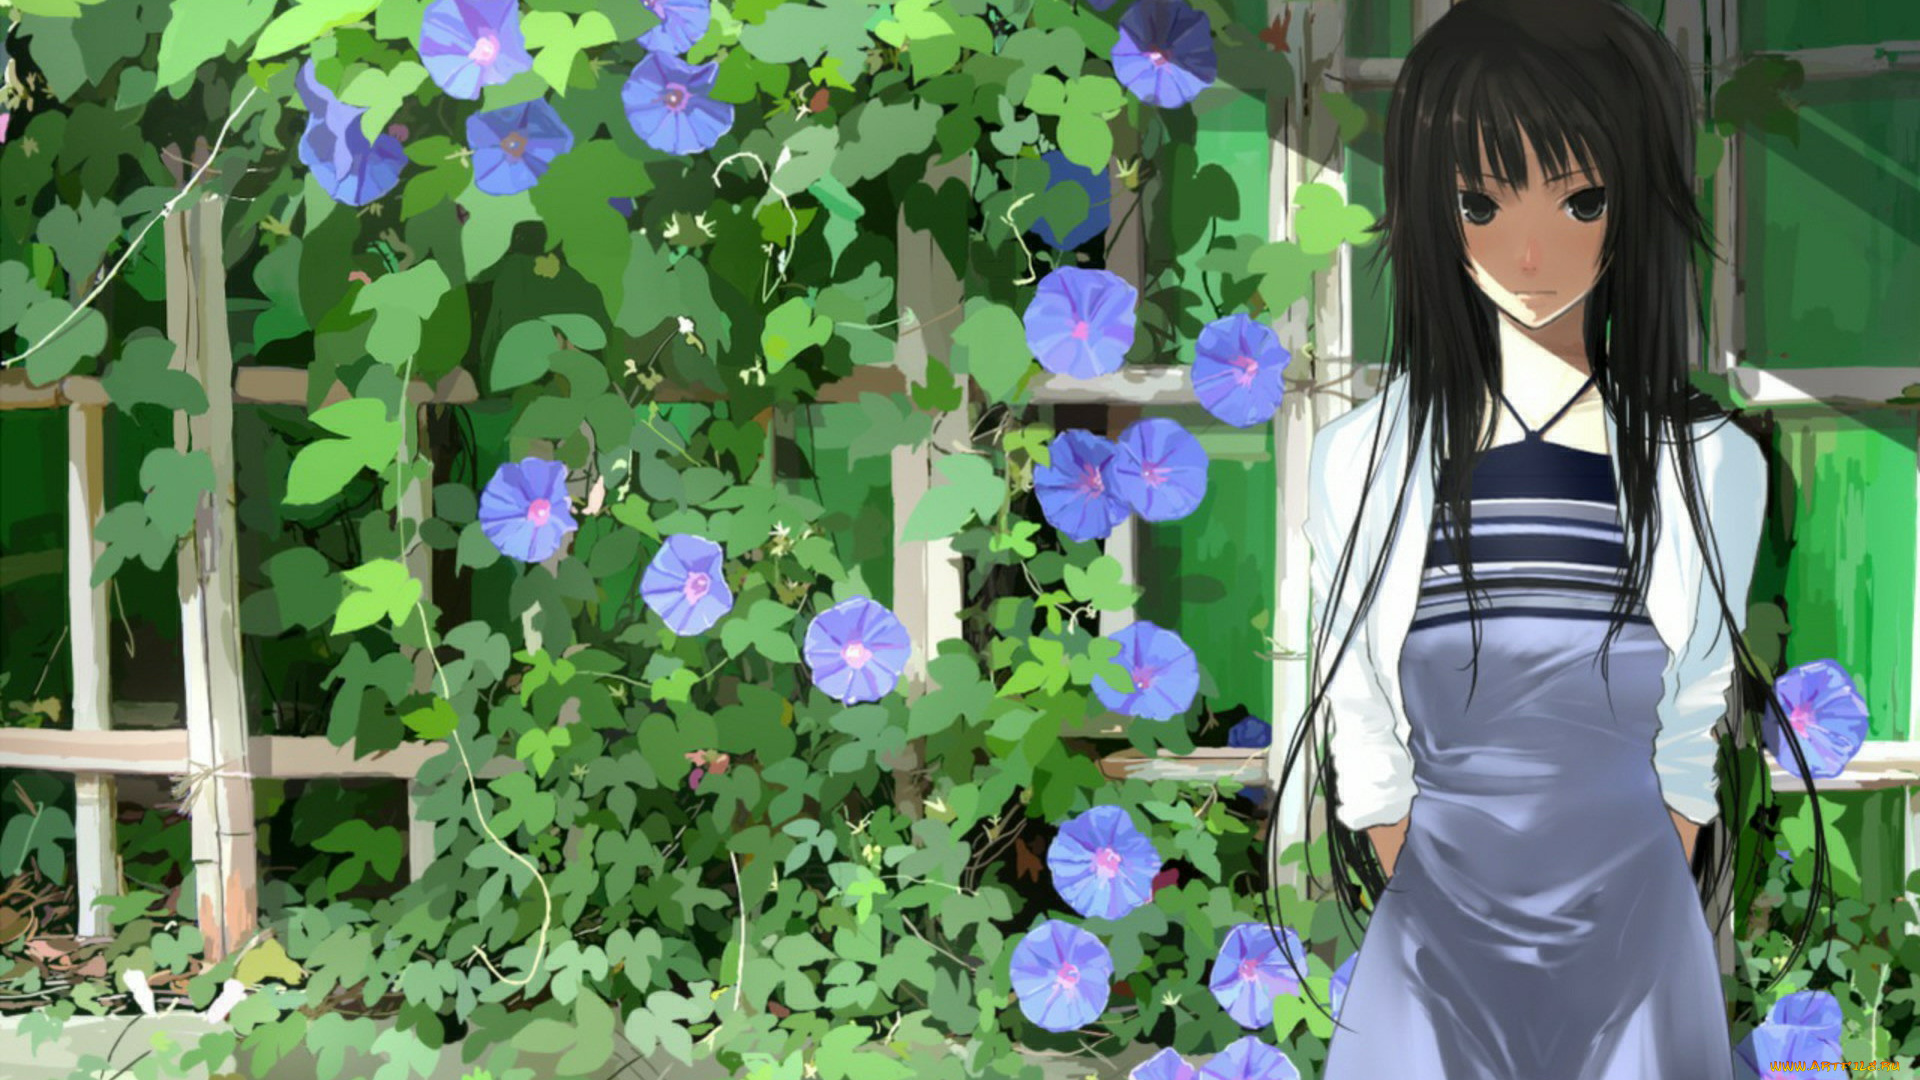 аниме, bakemonogatari, цветы, девушка, senjougahara, hitagi, растения, платье